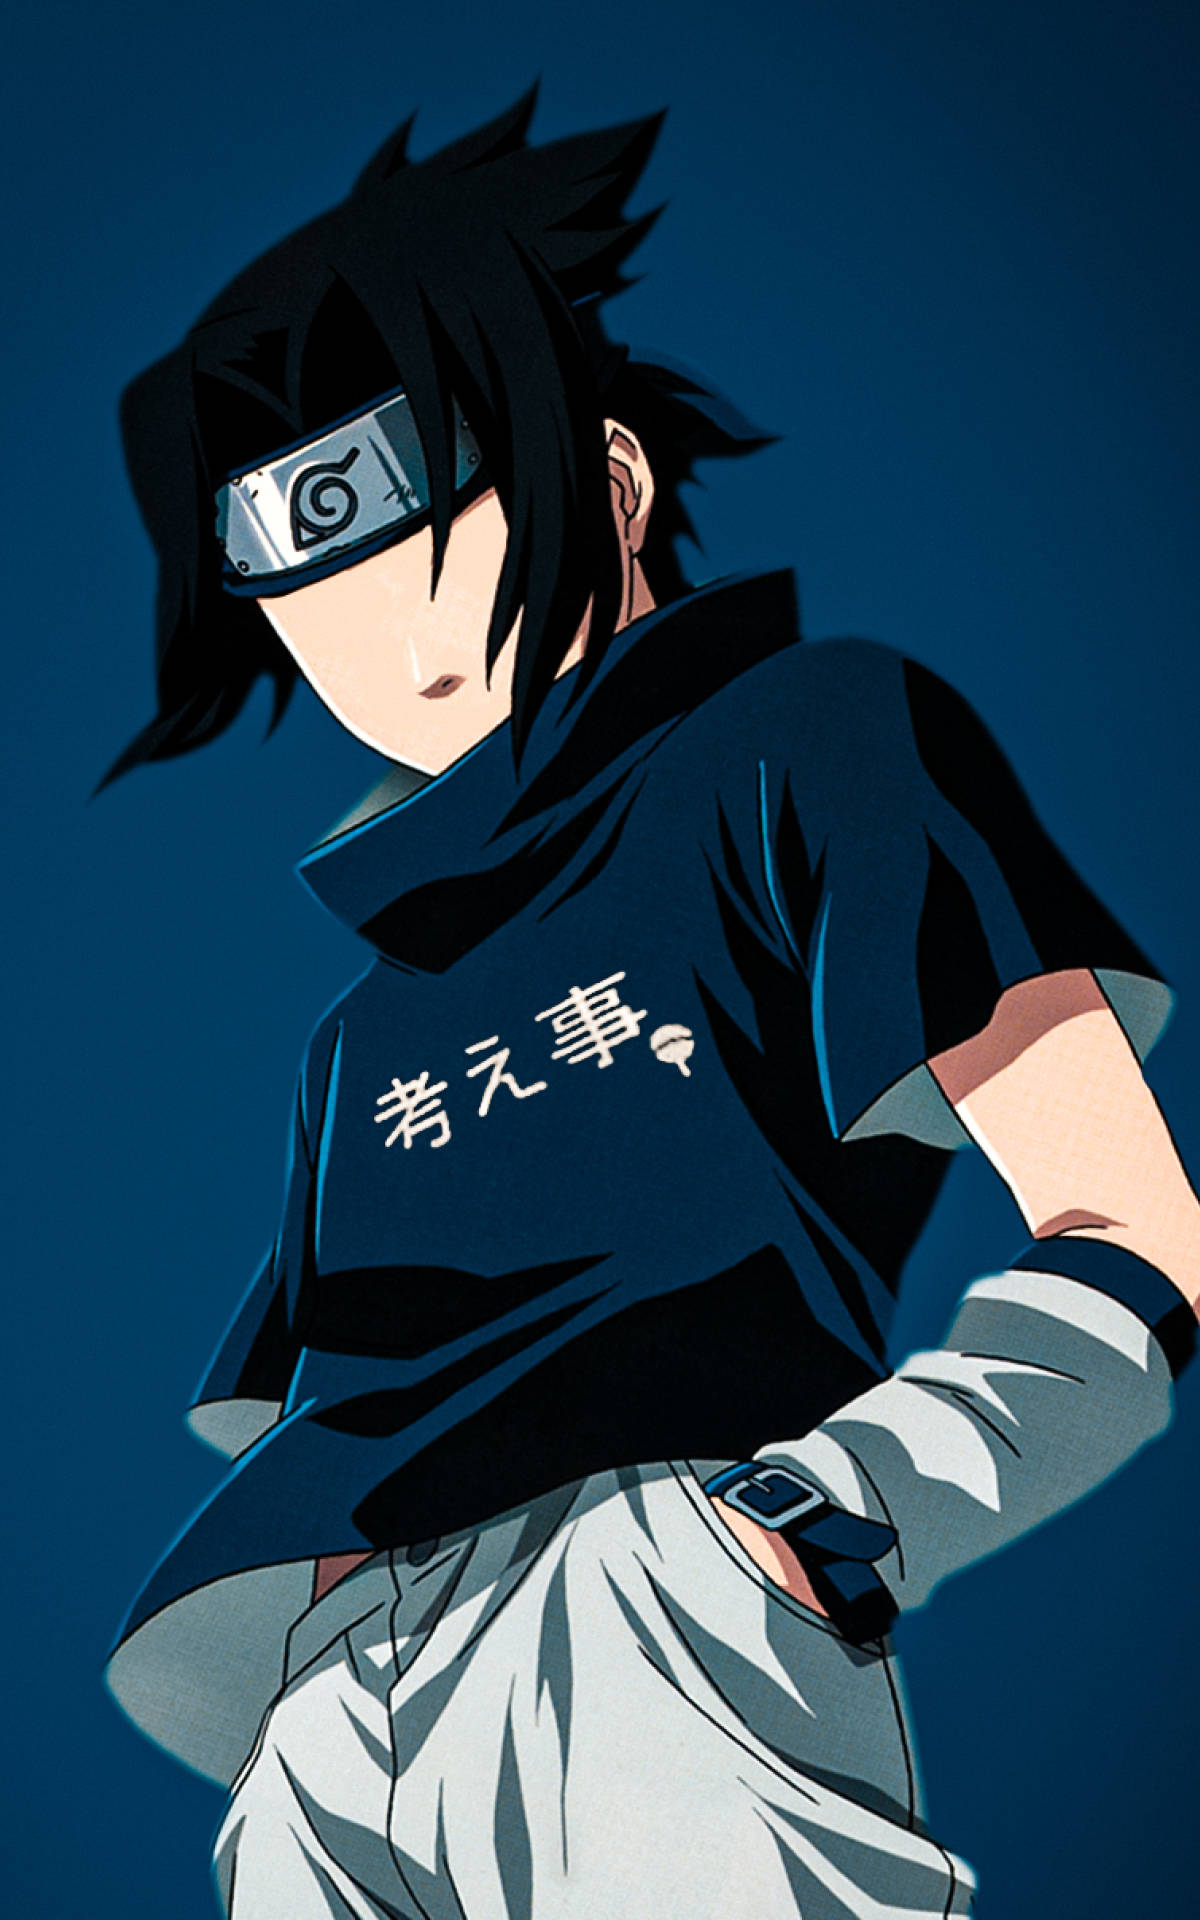 sasuke profile picture